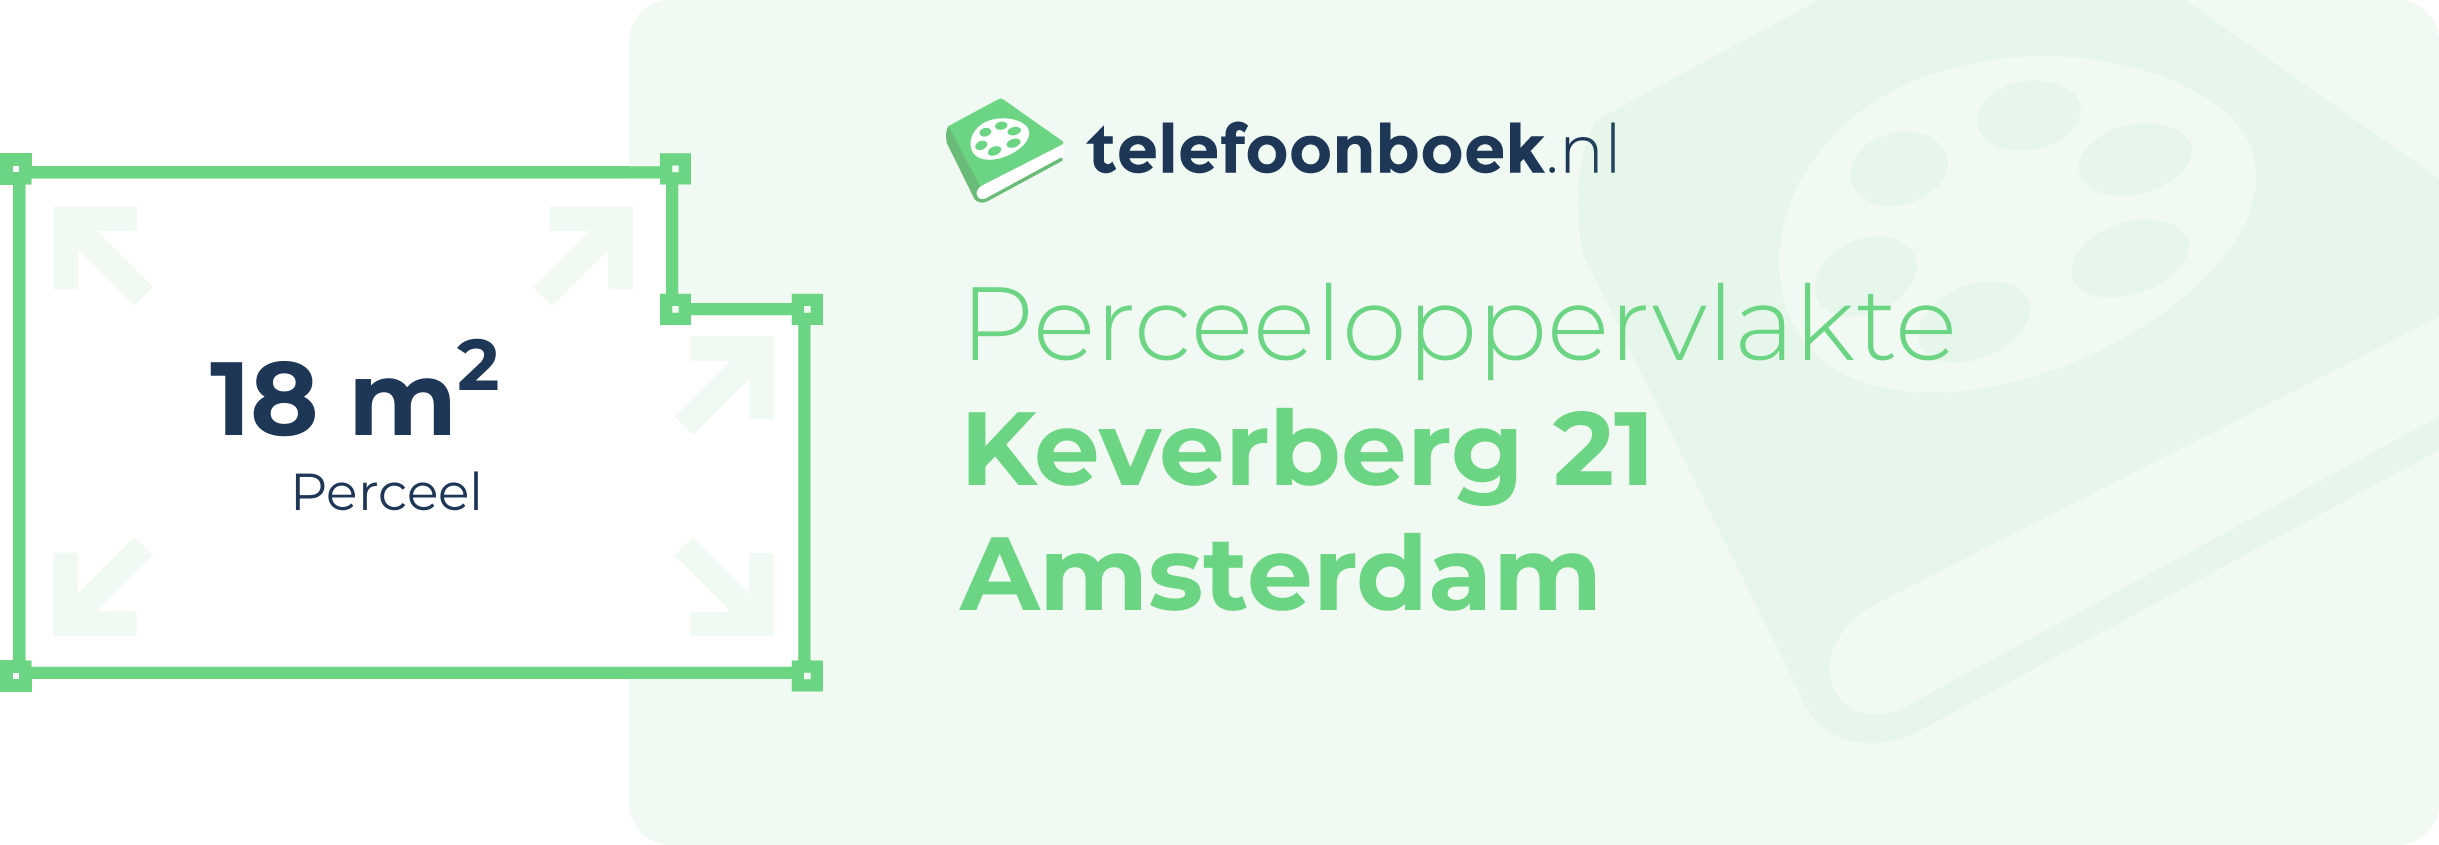 Perceeloppervlakte Keverberg 21 Amsterdam